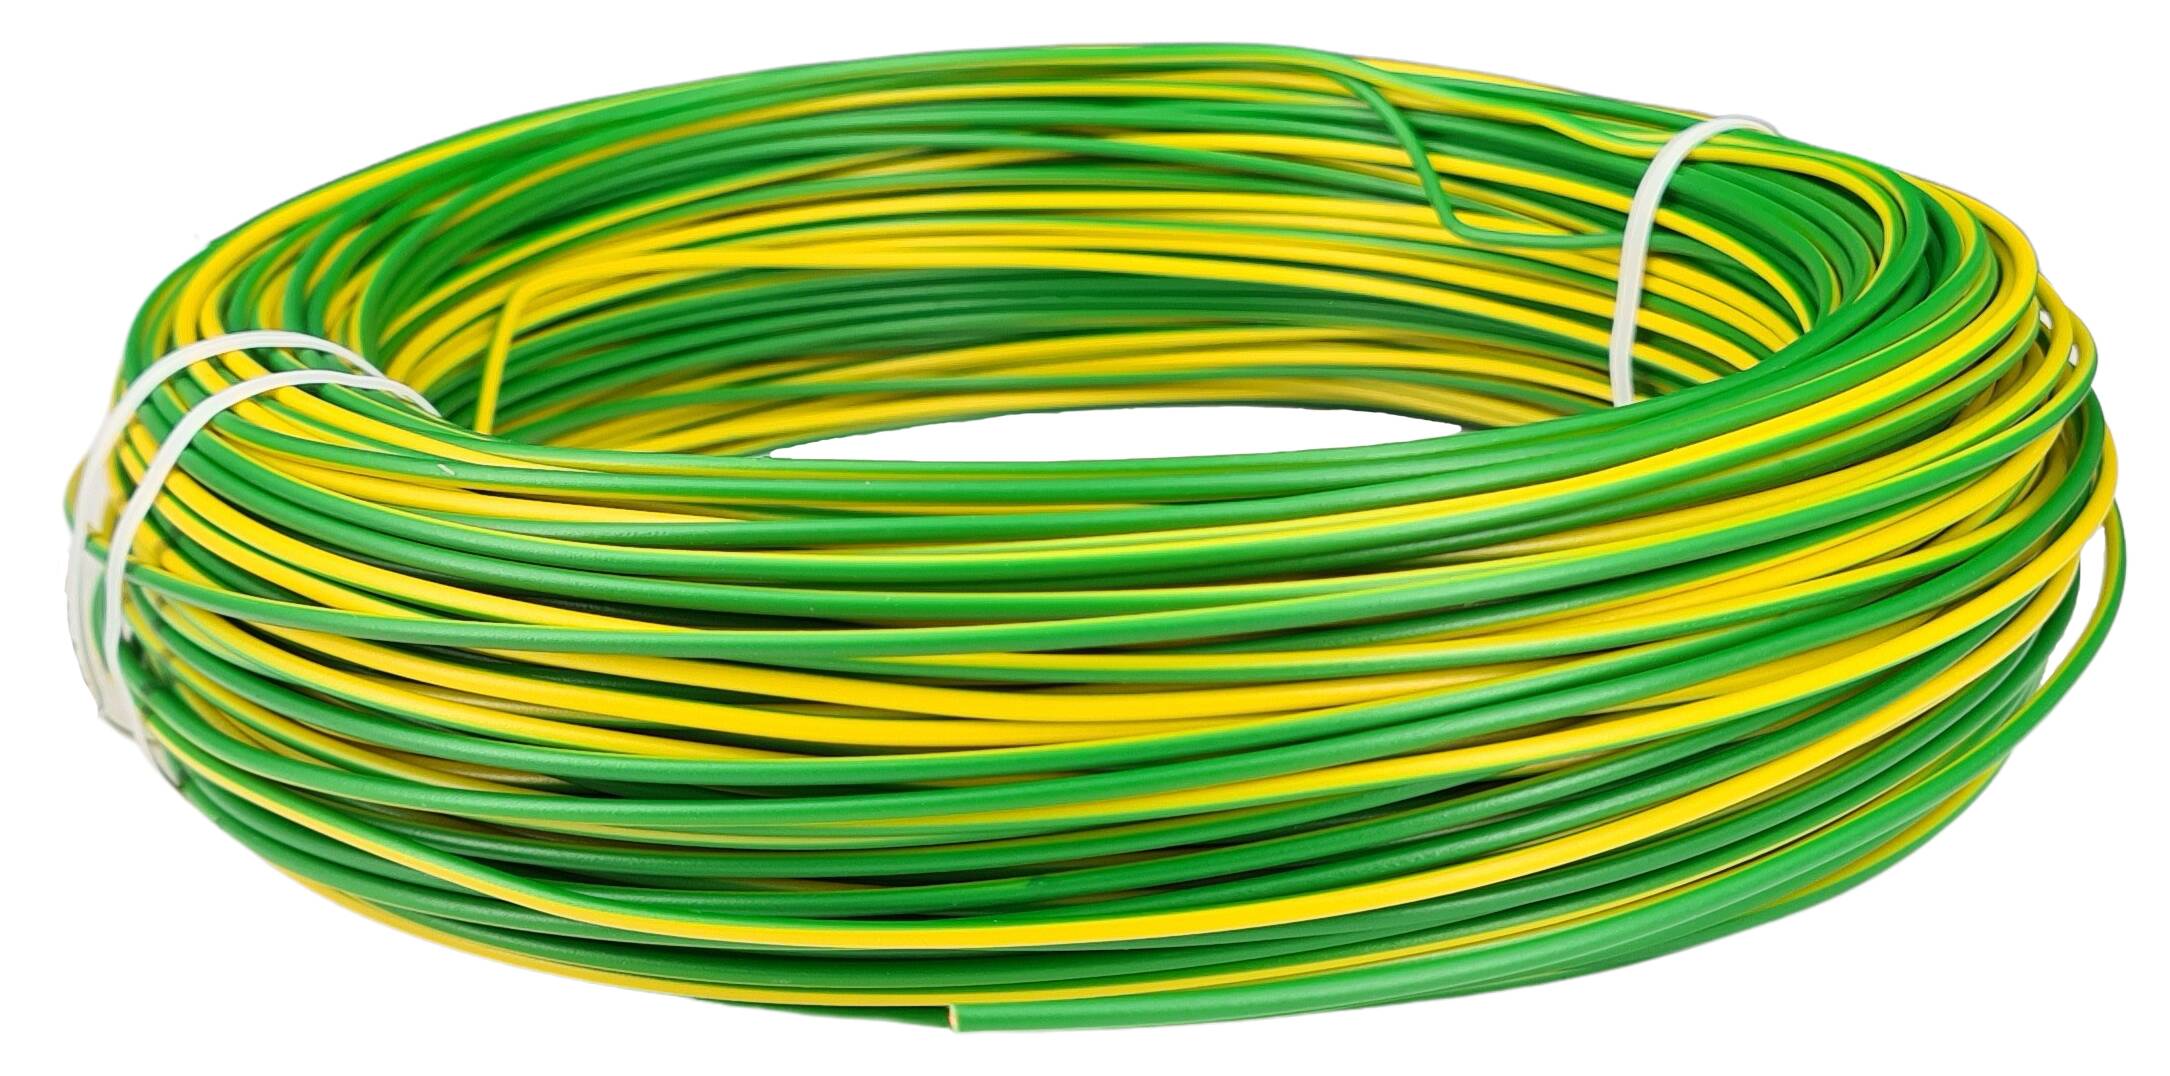 Kabel 1x0,50 H05V2-U starr grün-gelb